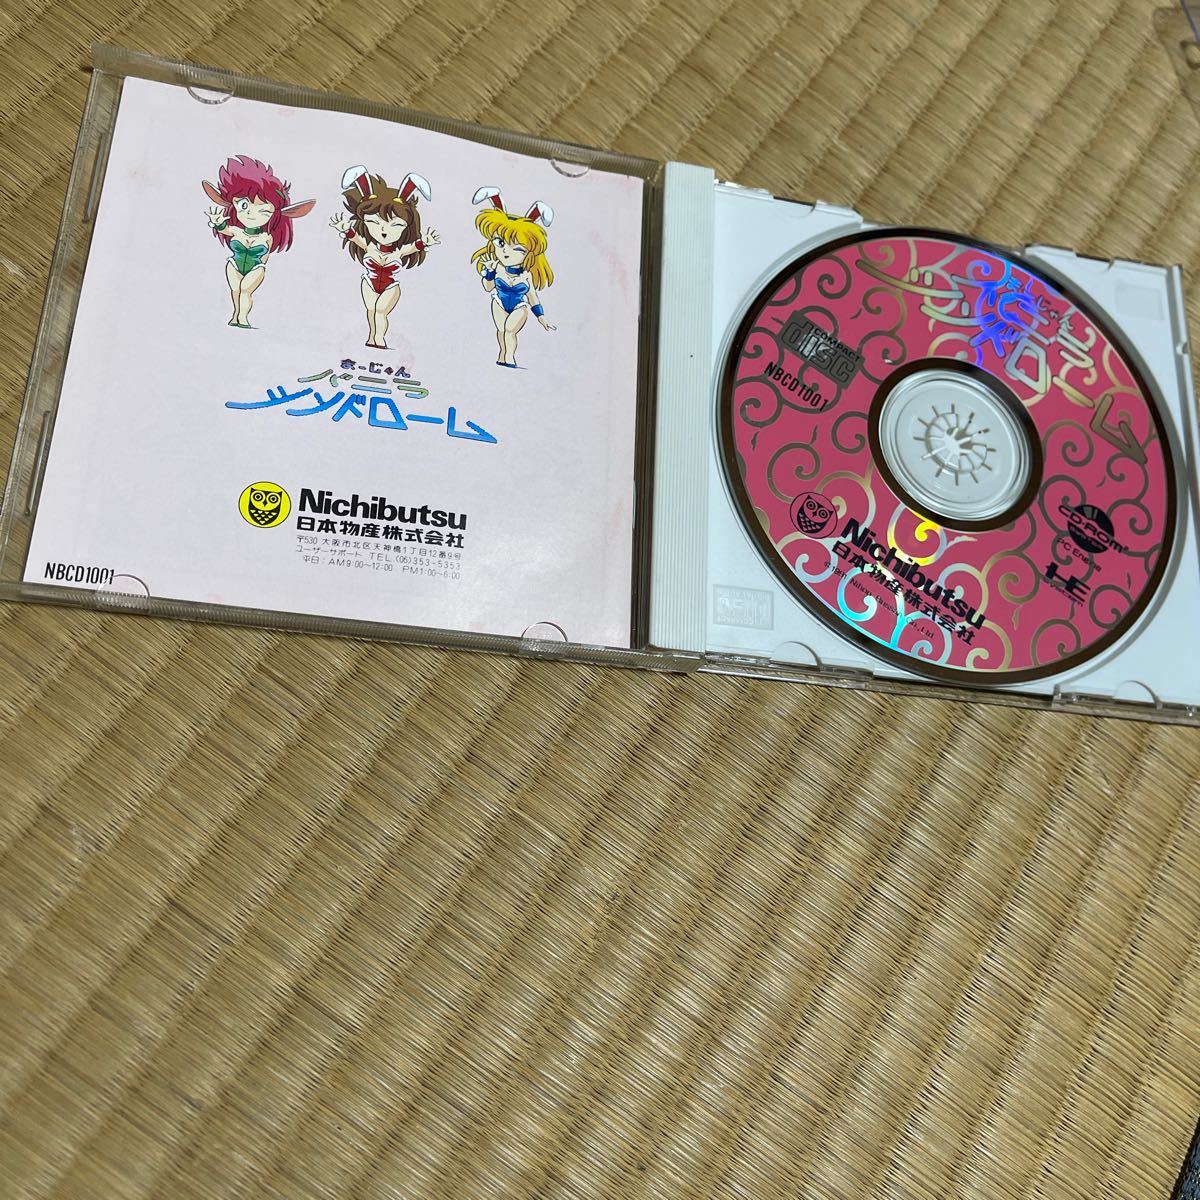 PCエンジン SUPER CD-ROM2 まーじゃんバニラシンドローム